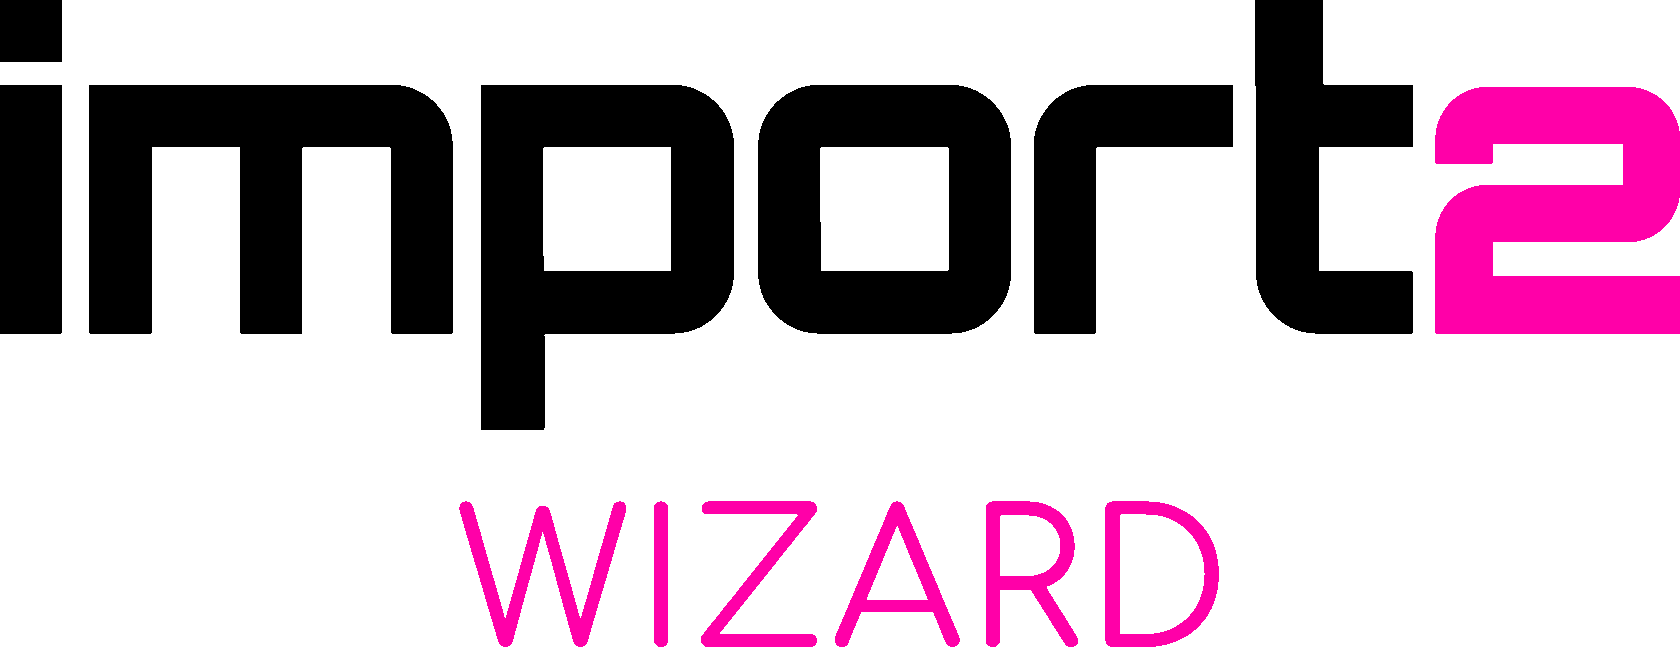 logo-wizard-vert